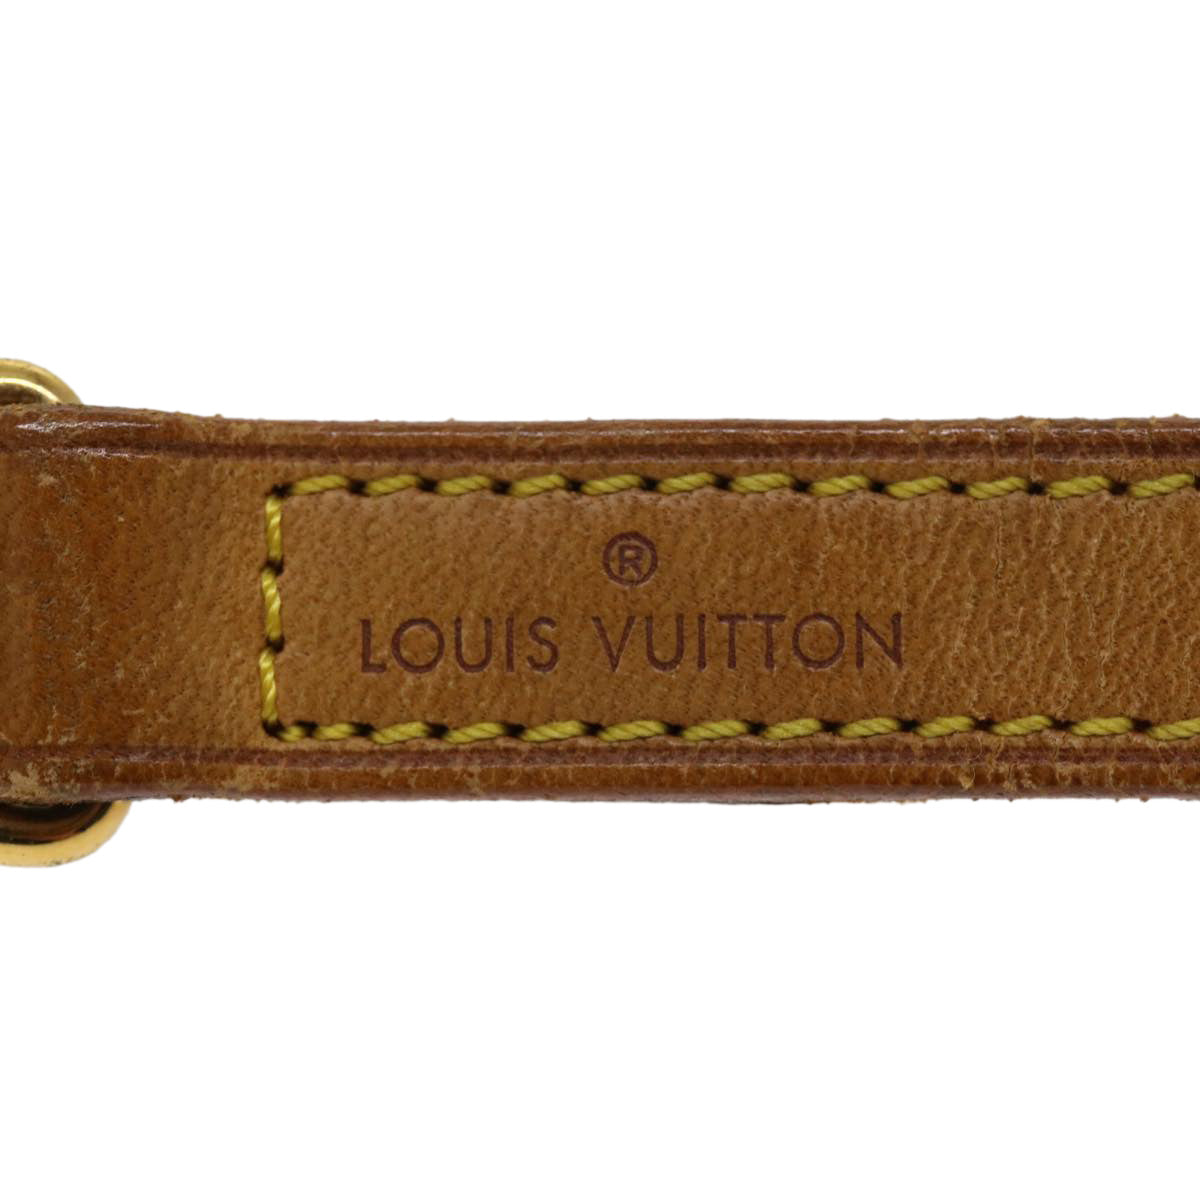 LOUIS VUITTON Shoulder Strap Leather 35.4"" Beige LV Auth 36890